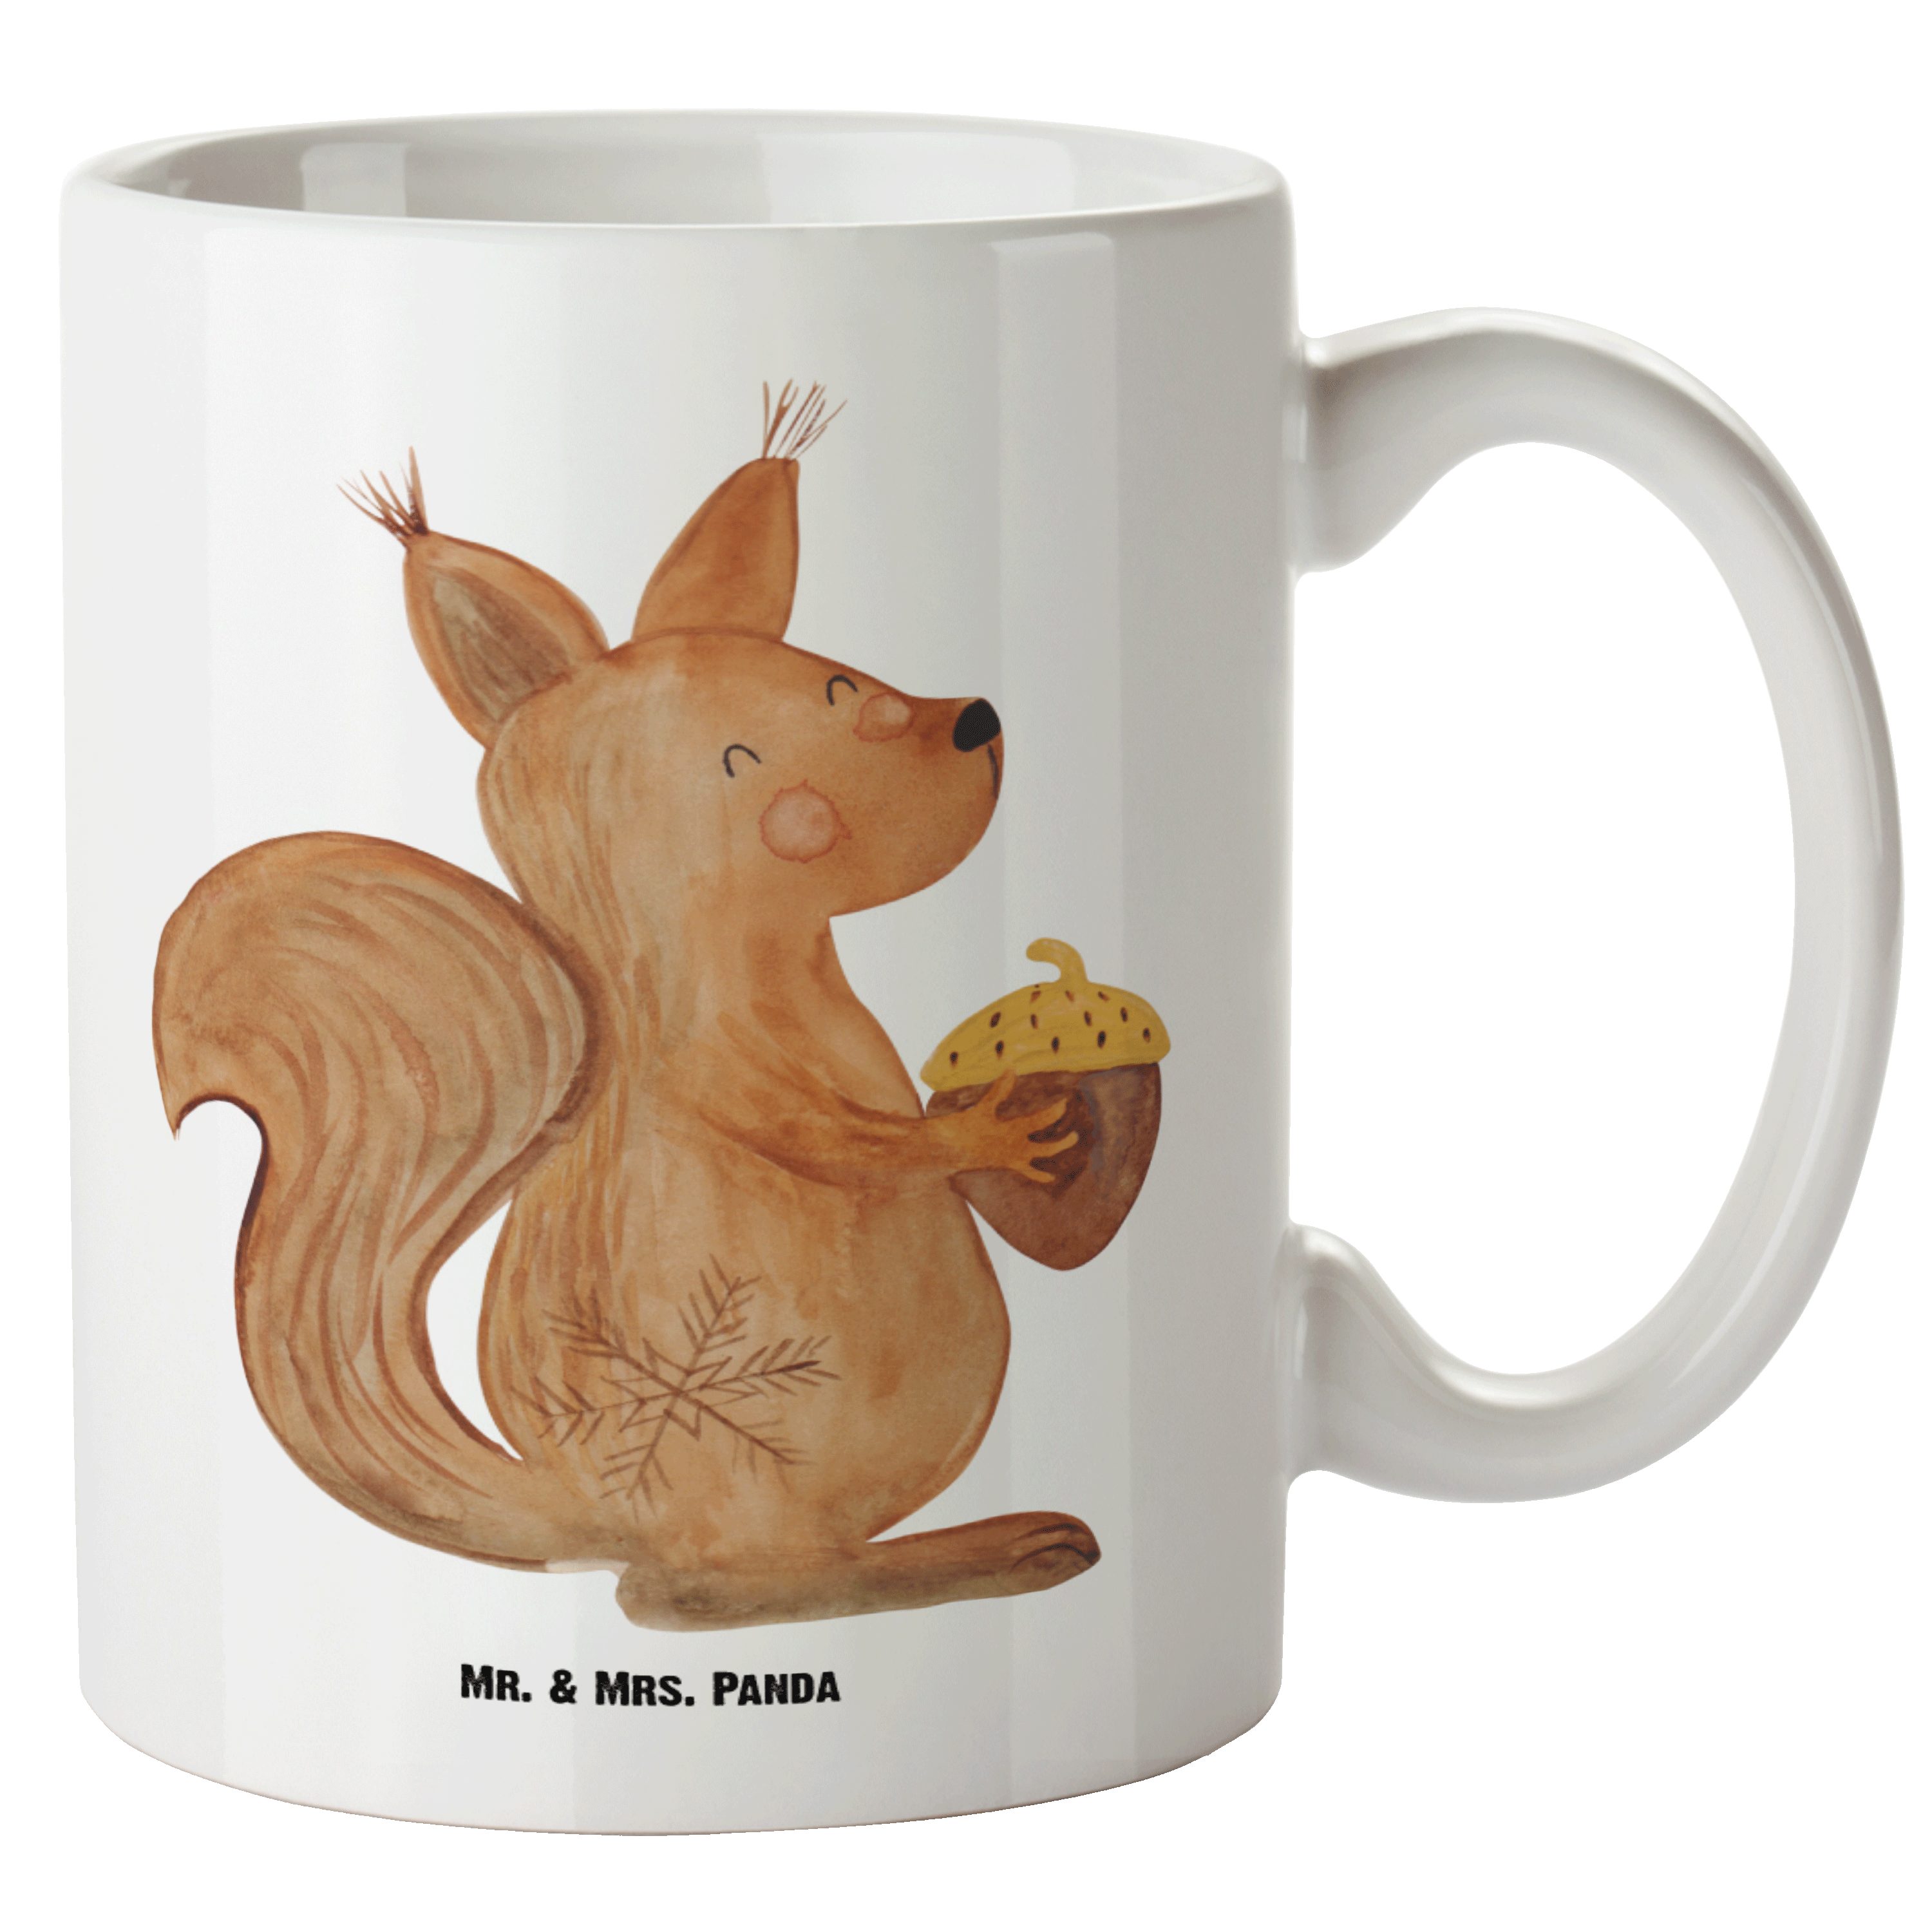 Mr. & Mrs. Panda Tasse Eichhörnchen Weihnachten - Weiß - Geschenk, Neujahr, Weihnachtsmotiv, XL Tasse Keramik | Tassen